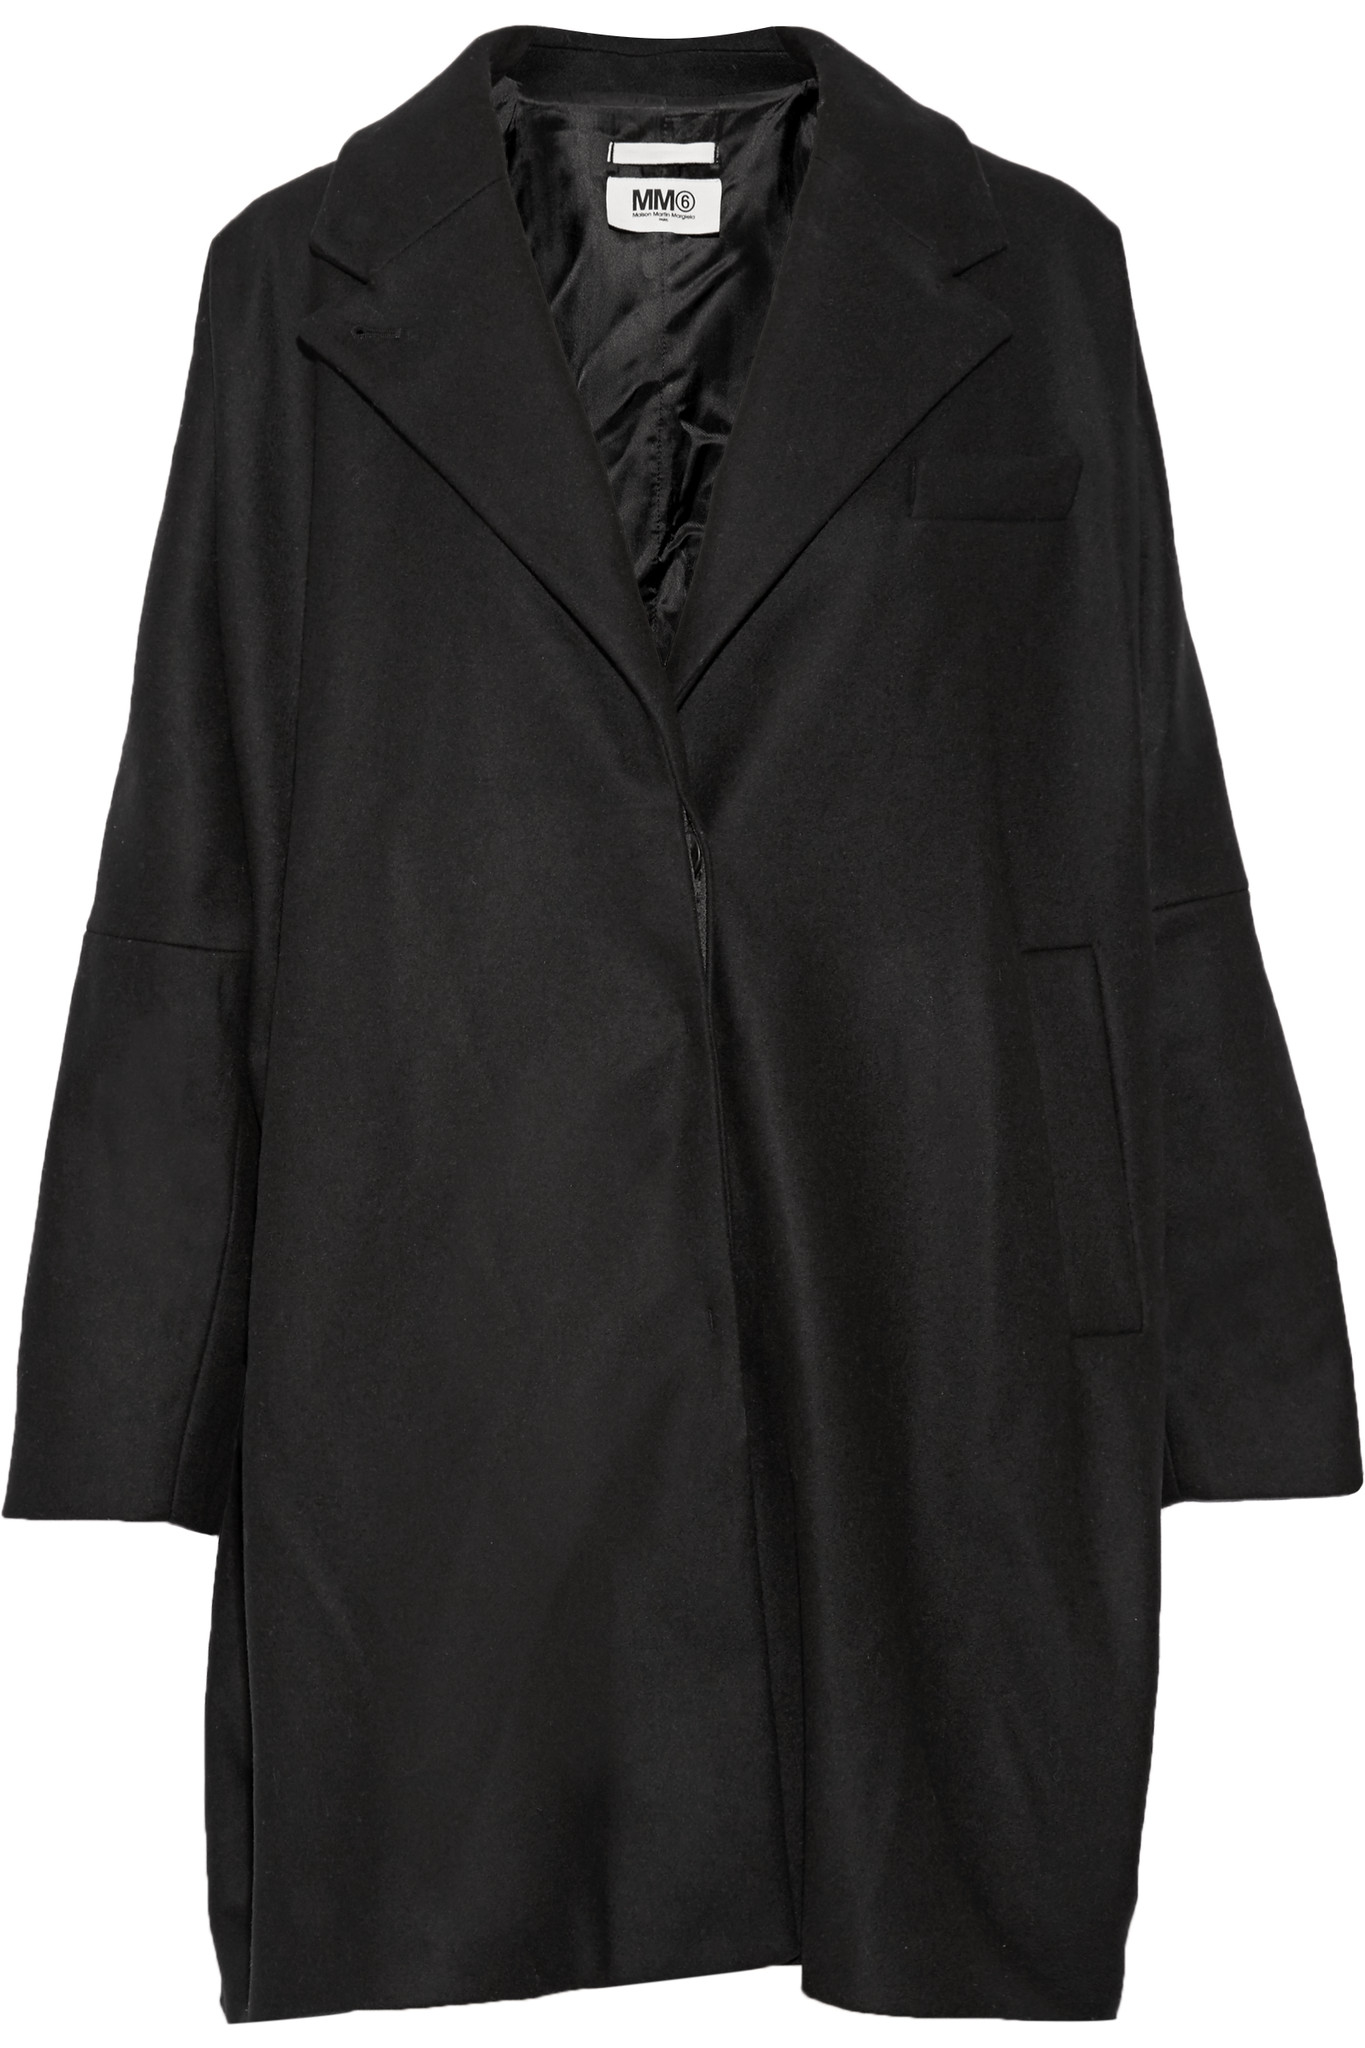 MM6 by Maison Martin Margiela Wool-blend Coat in Black - Lyst